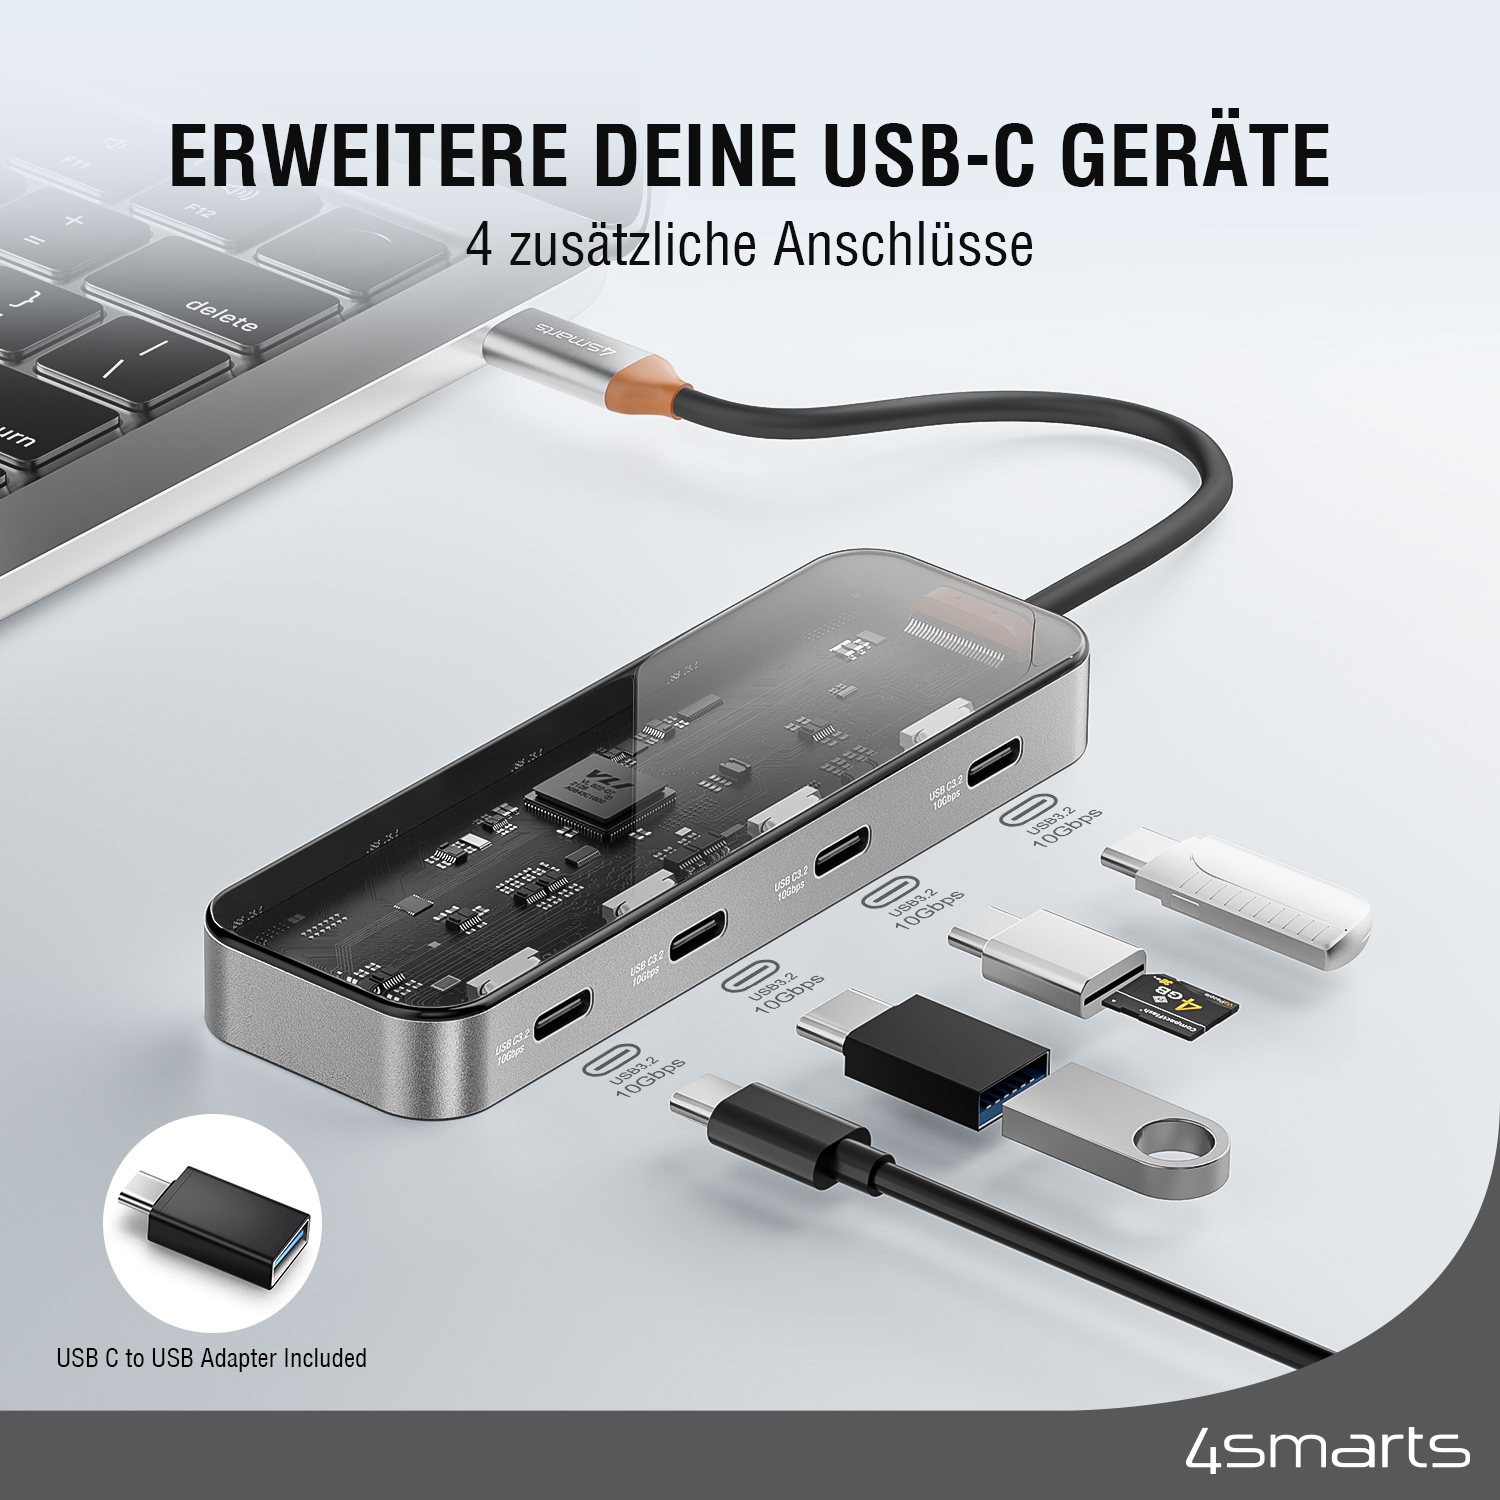 4smarts USB-C Hub erweitert deine Geräte mit 4 zusätzlichen Anschläussen.